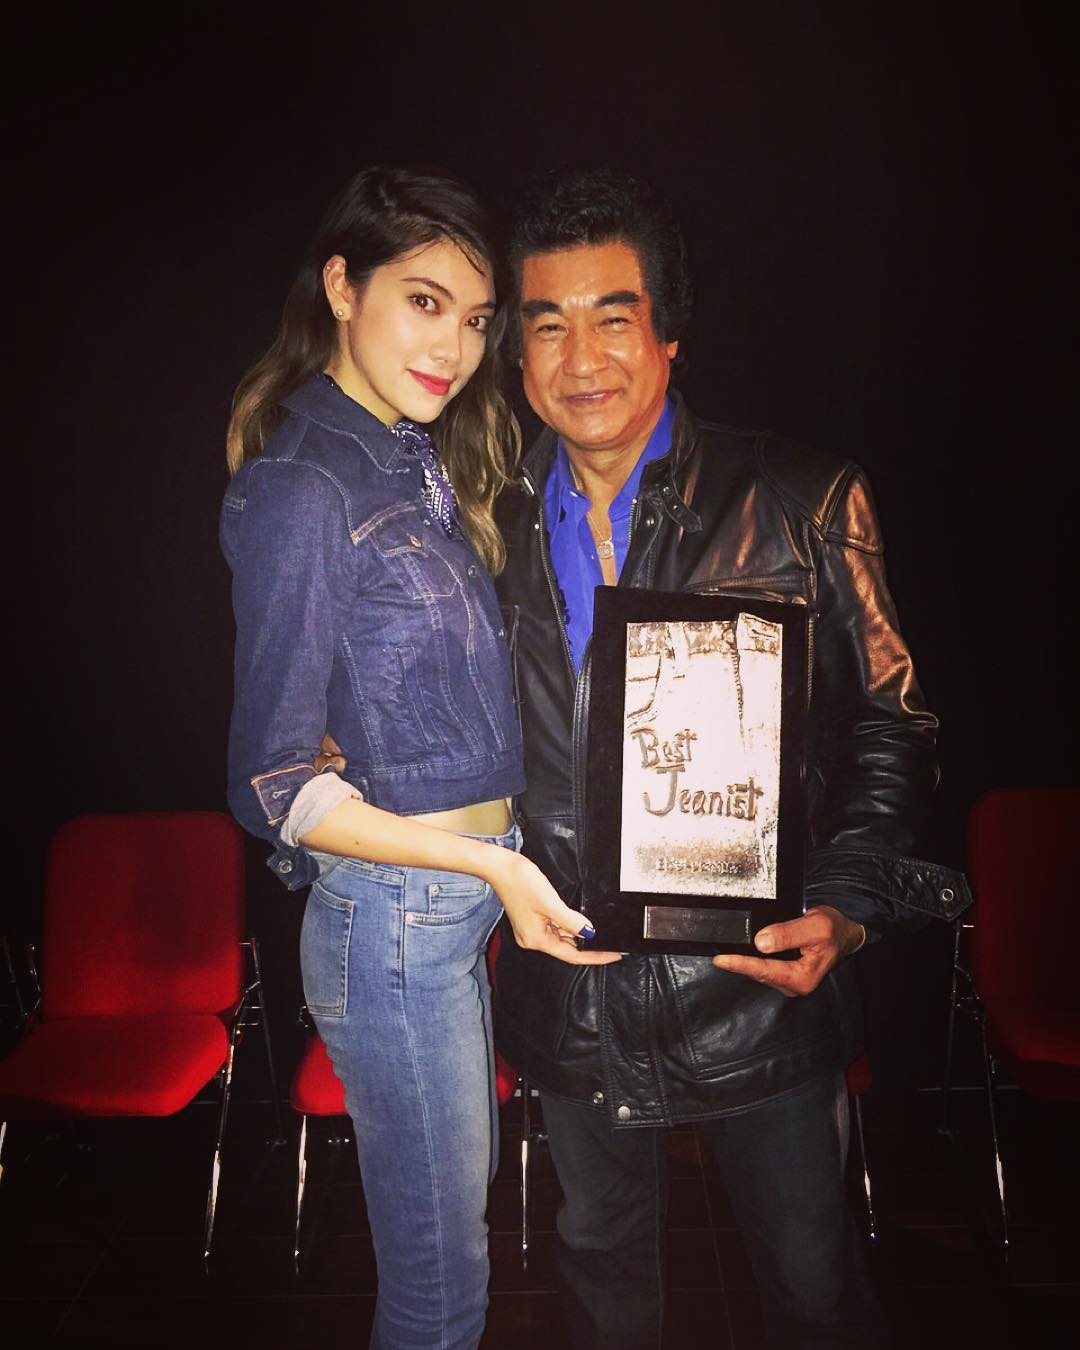 森星 So Honored To Receive The Best Jeanist Award 15 憧れのベストジーニスト賞をゲットできて緊張max Th Wacoca Japan People Life Style